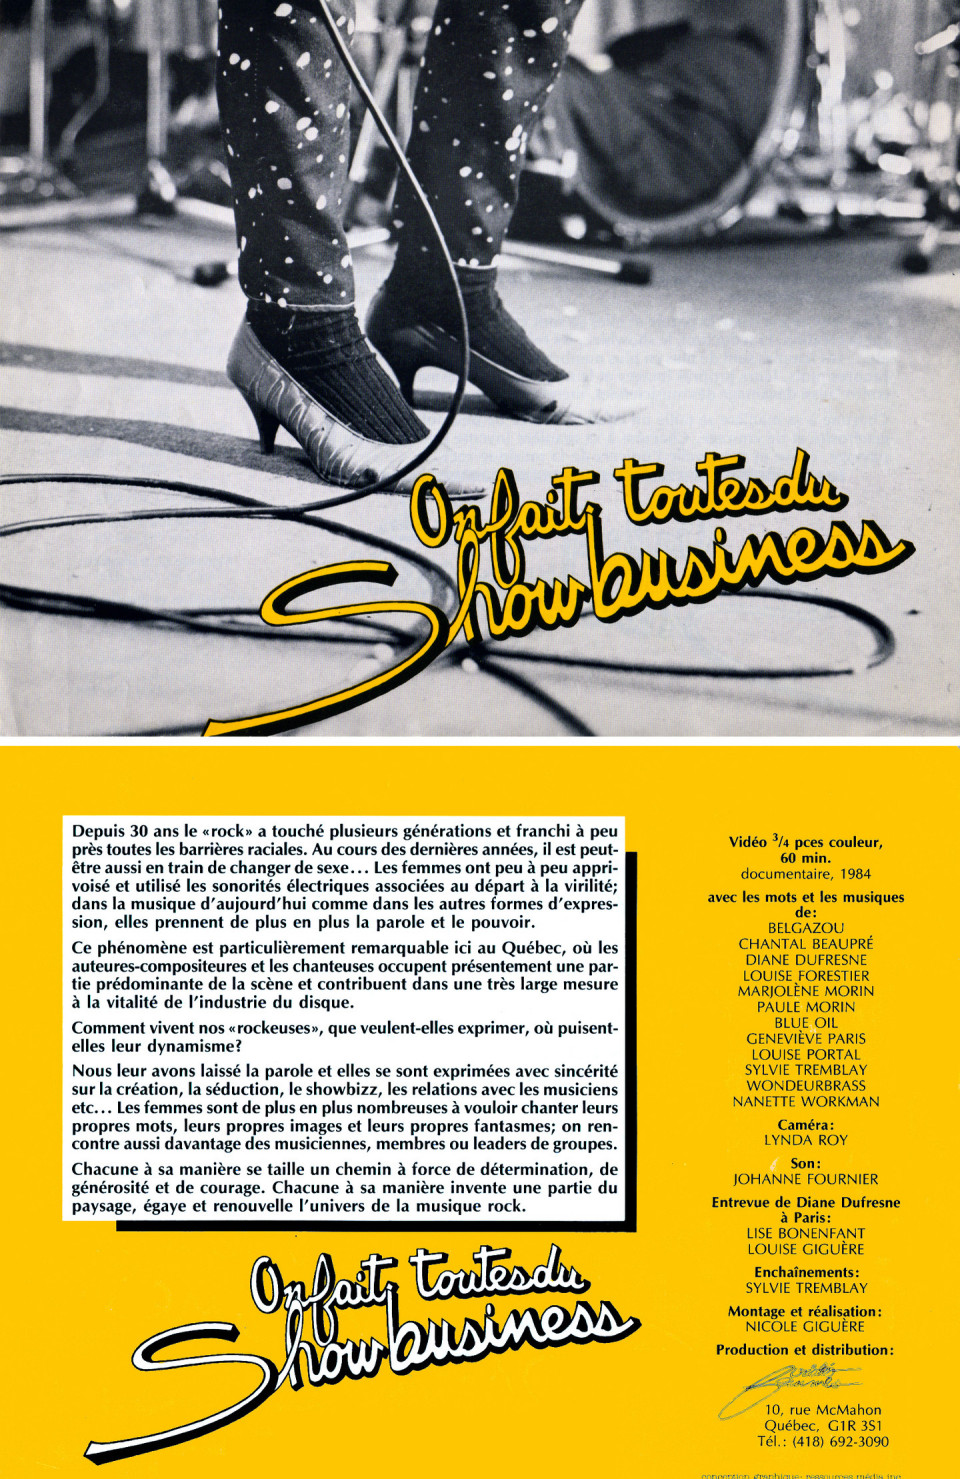 «On fait toutes du showbusiness», documentaire de Nicole Giguère, 1984. Feuillet original. Montage recto verso